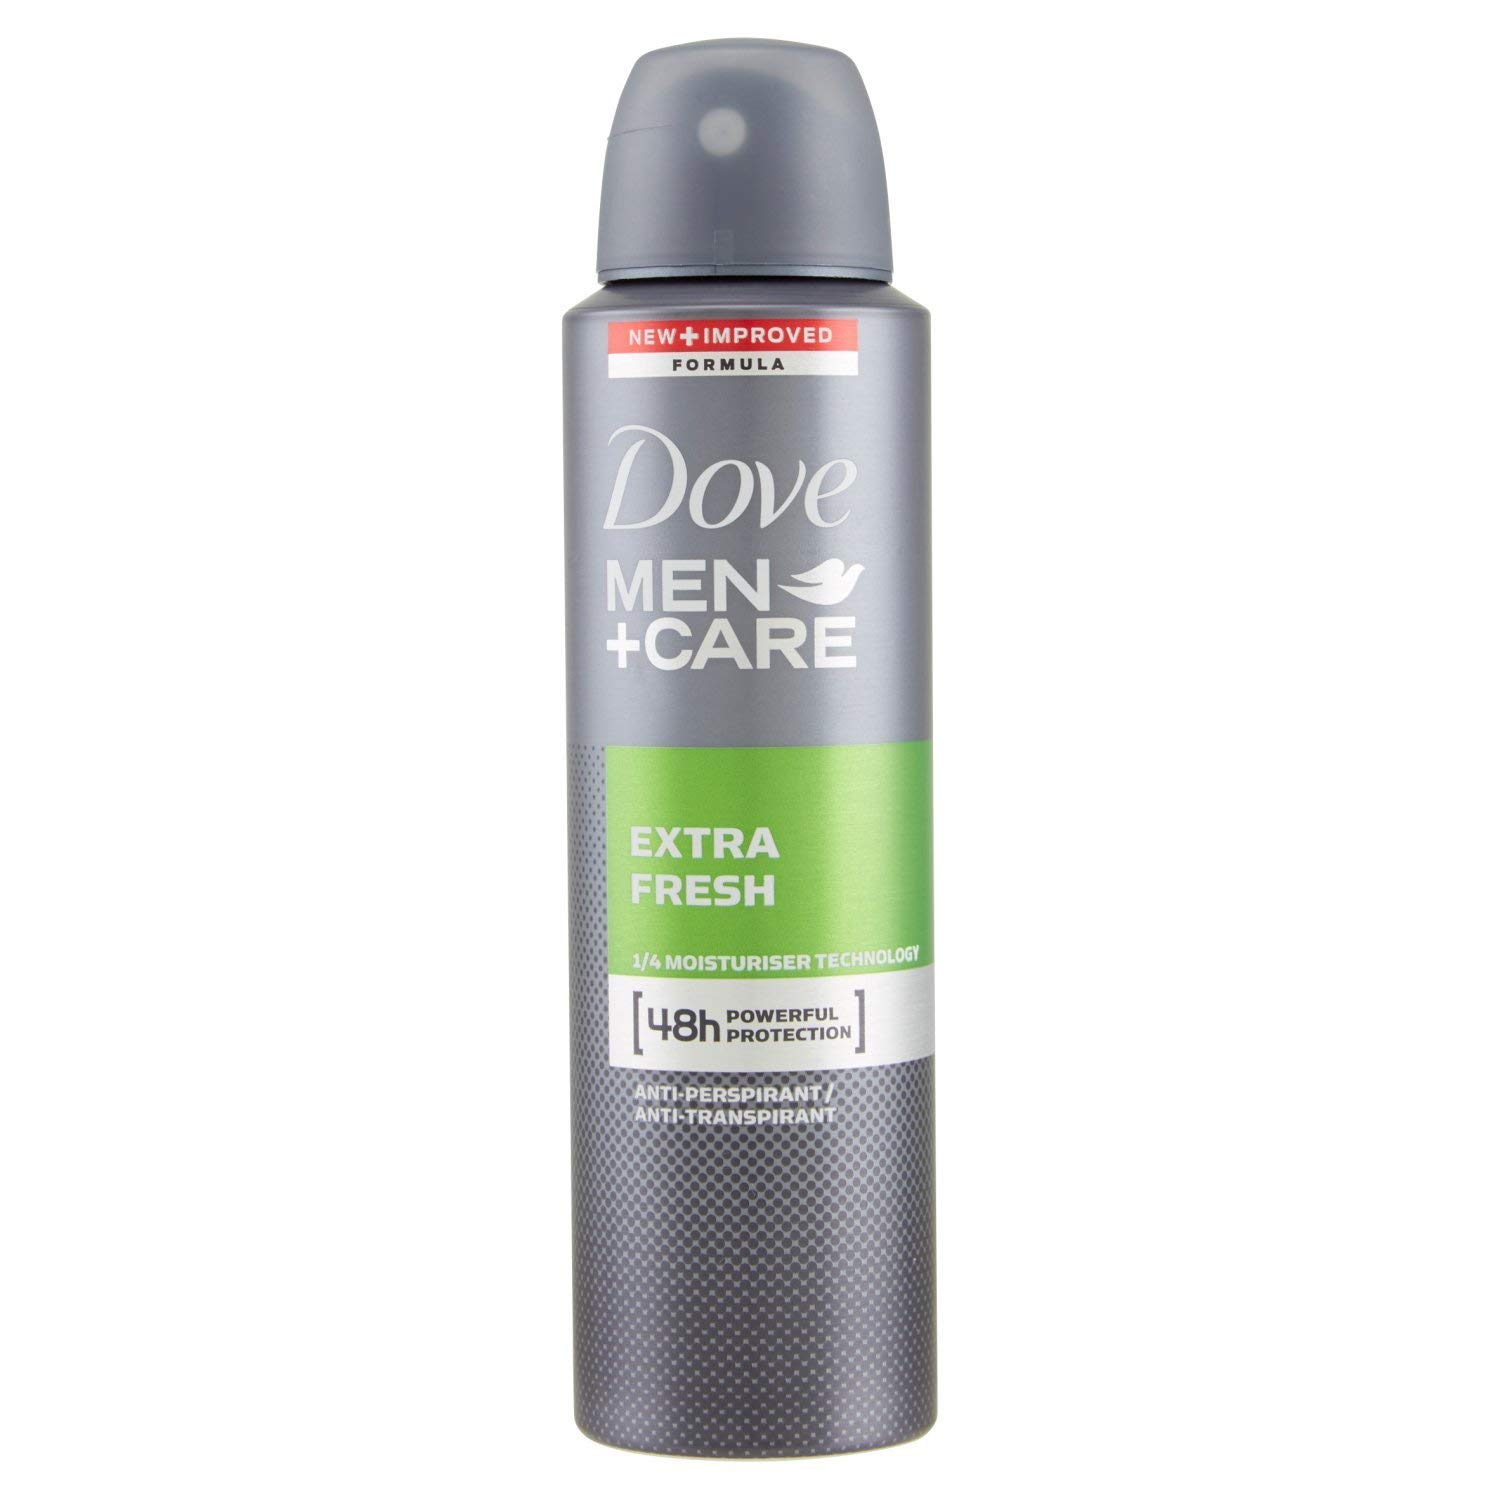 Dove deodorante Man+Care Extra Fresh